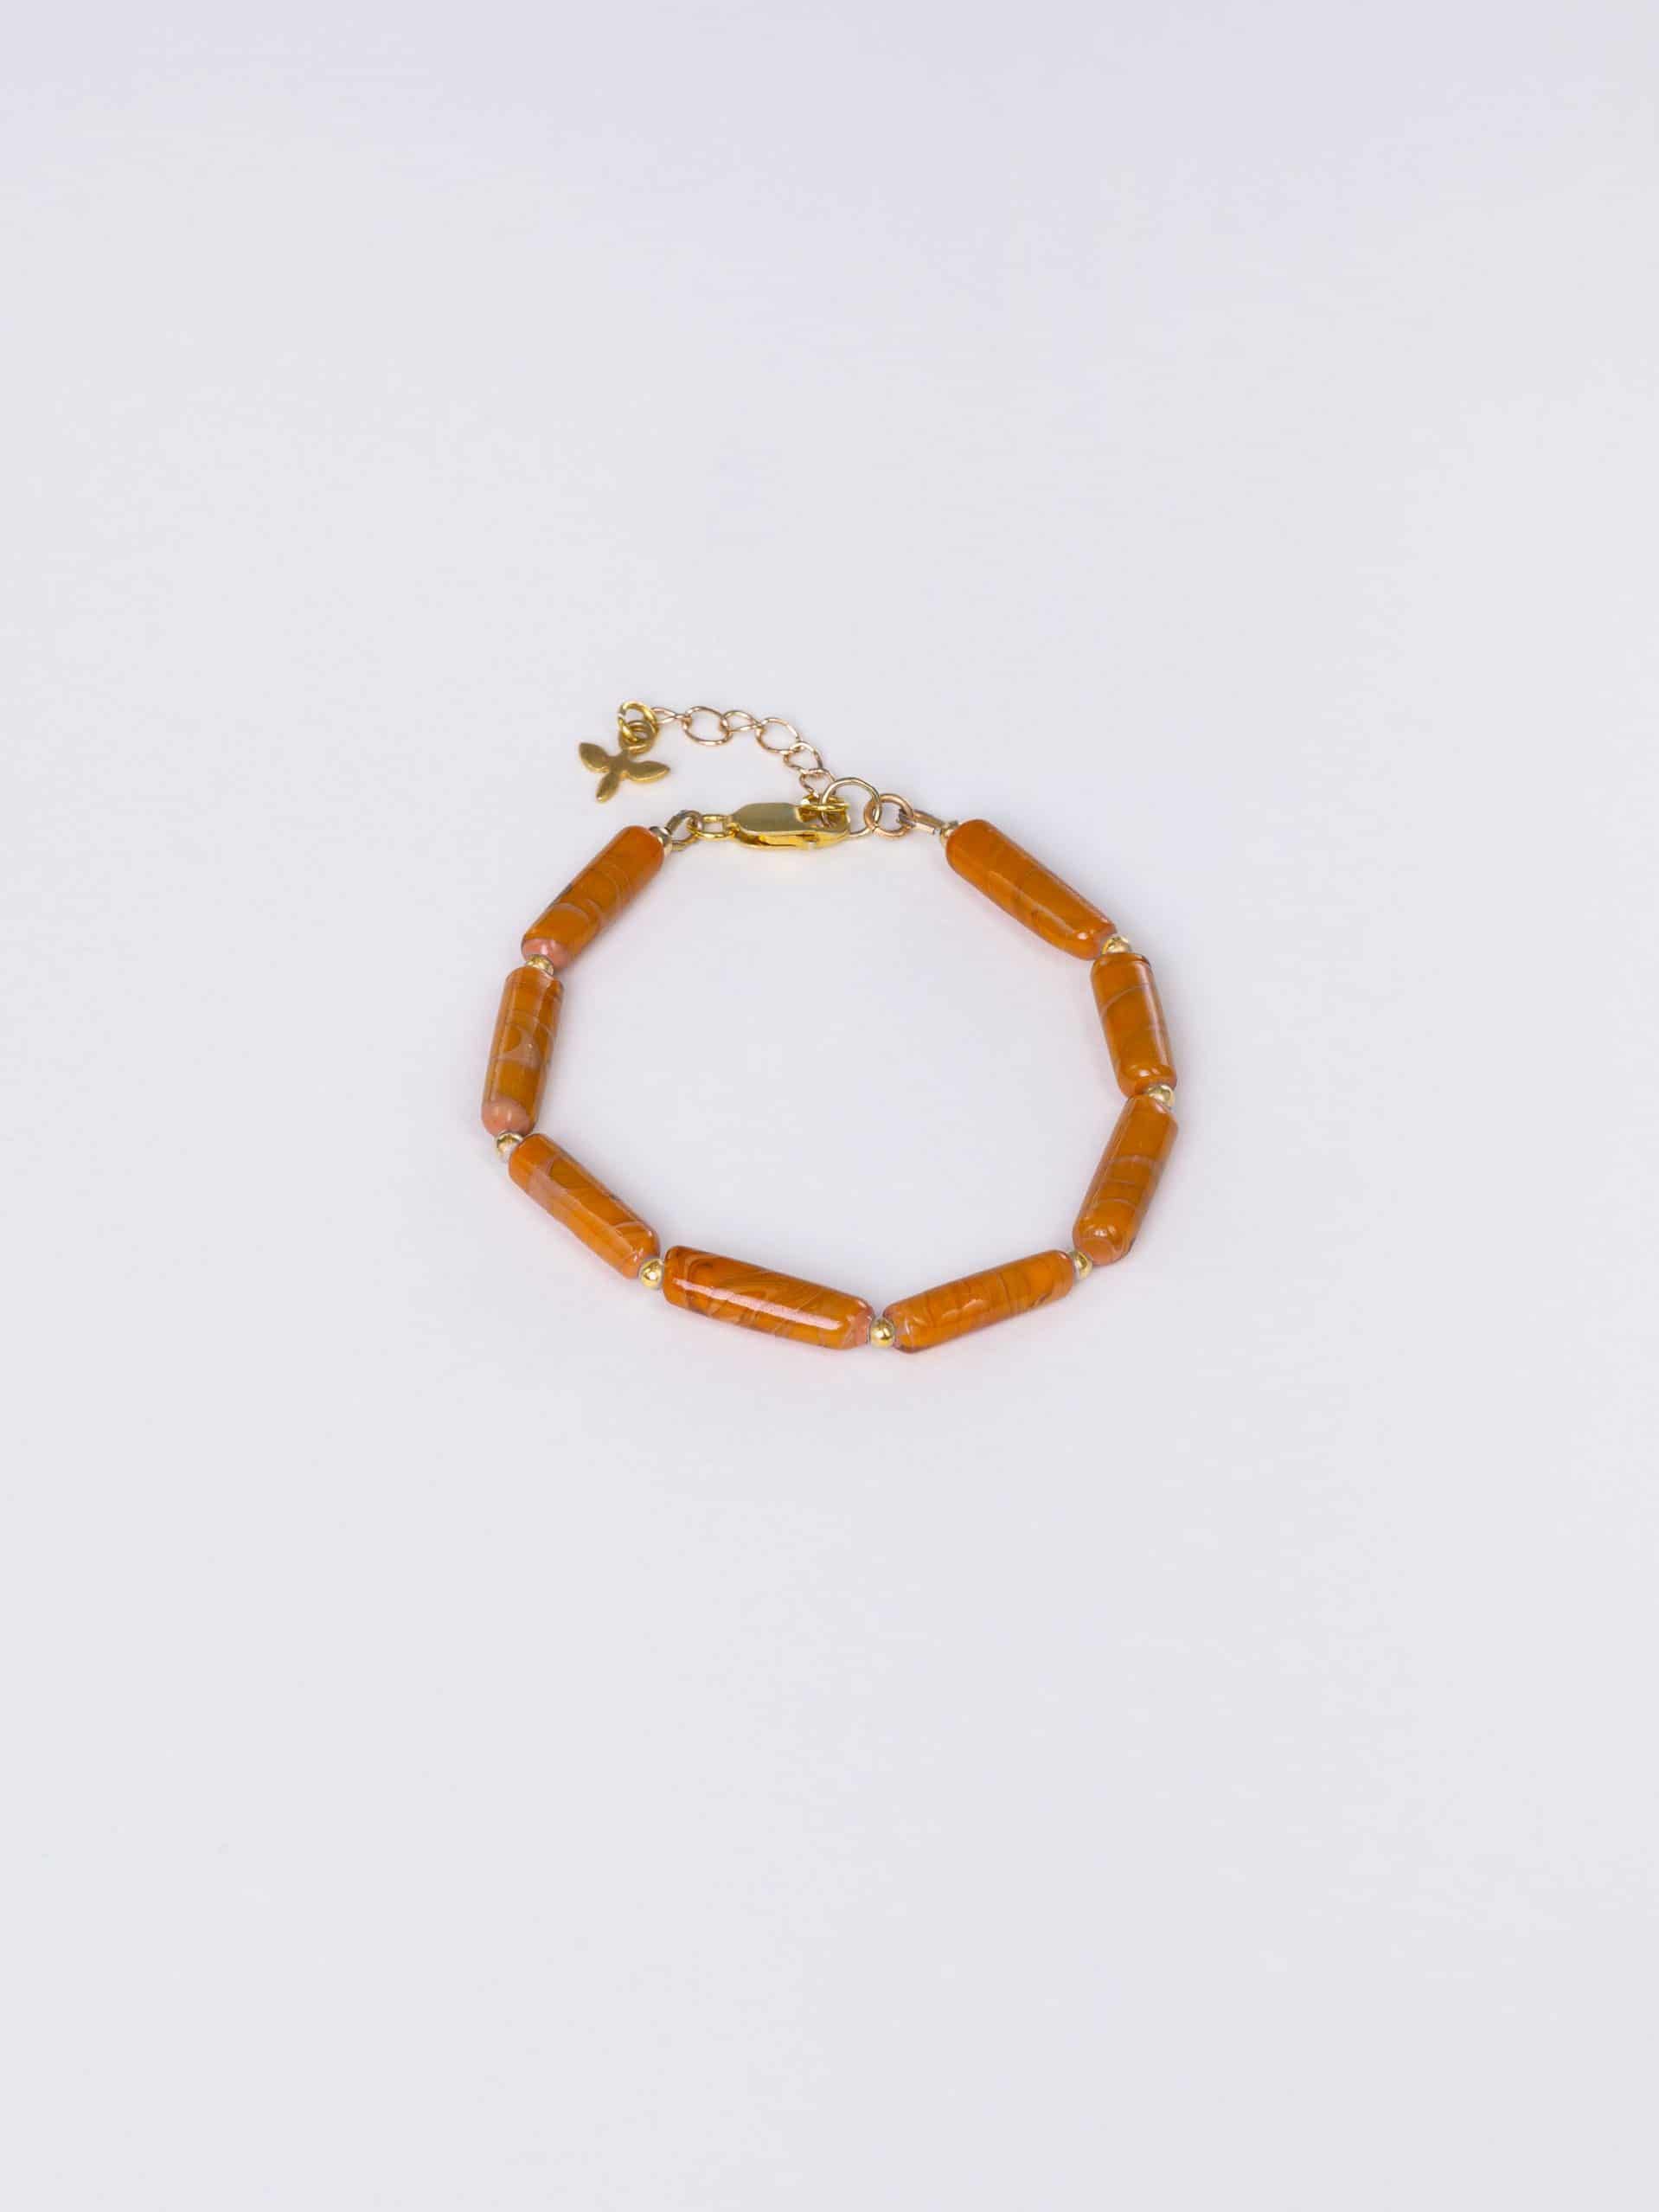 SAROCCA Glas Schmuck individuell nachhaltig Armband orange braun vergoldetes Silber